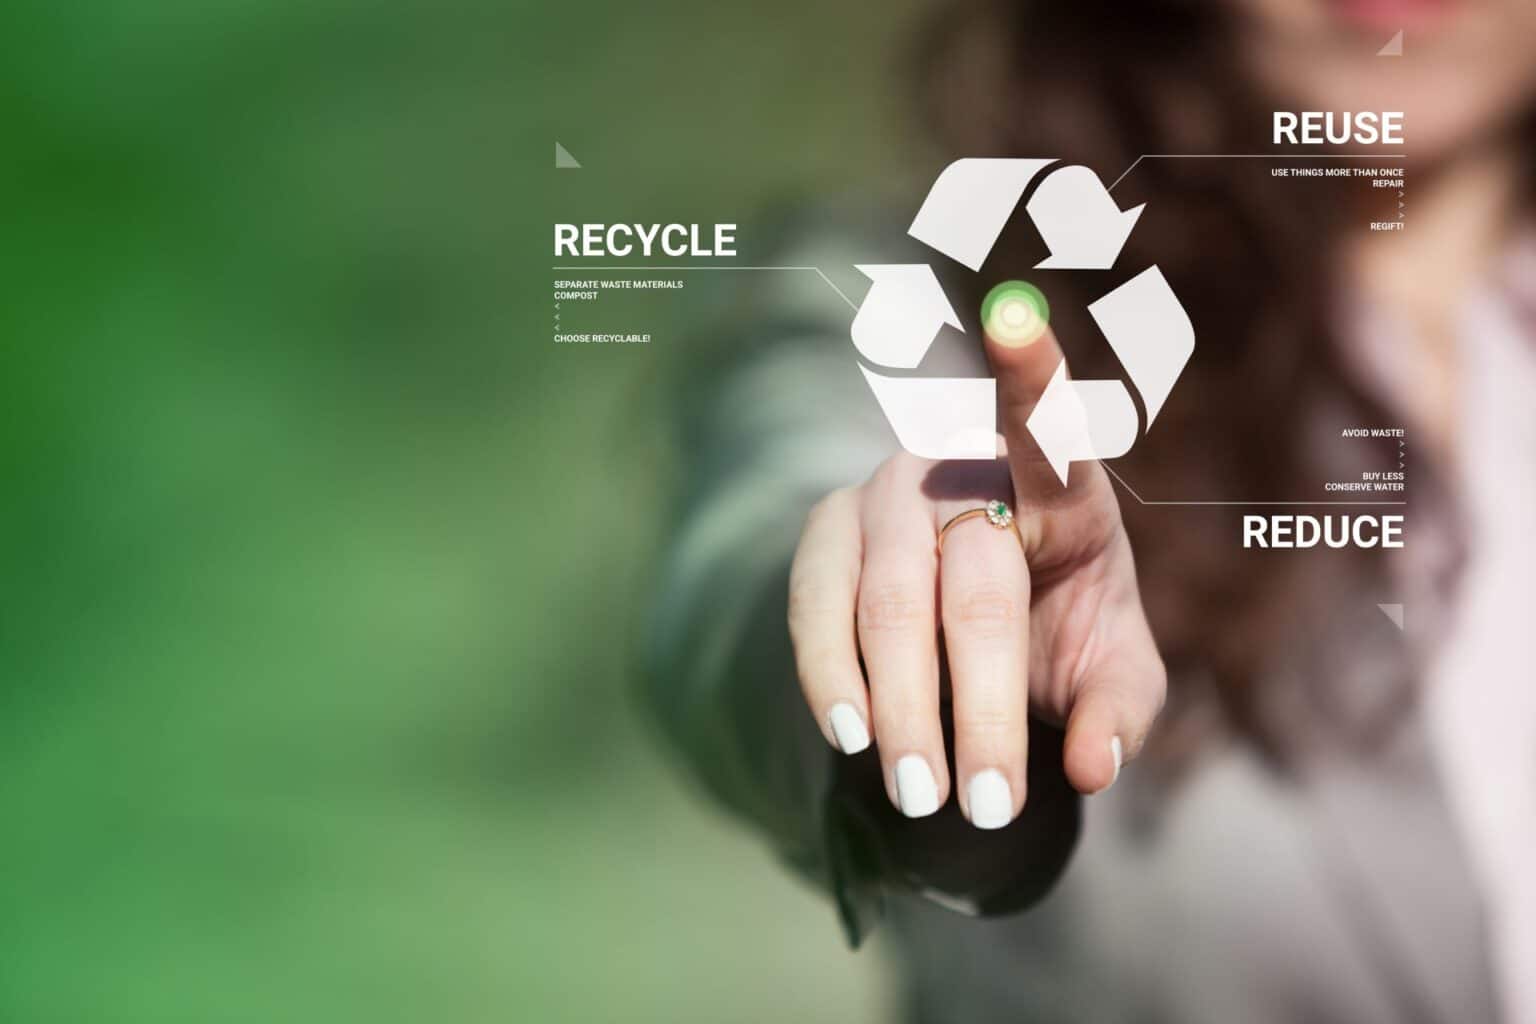 Berater über Wiederverwertung von Akkus: "Recyclat wird immer attraktiver für die Industrie"